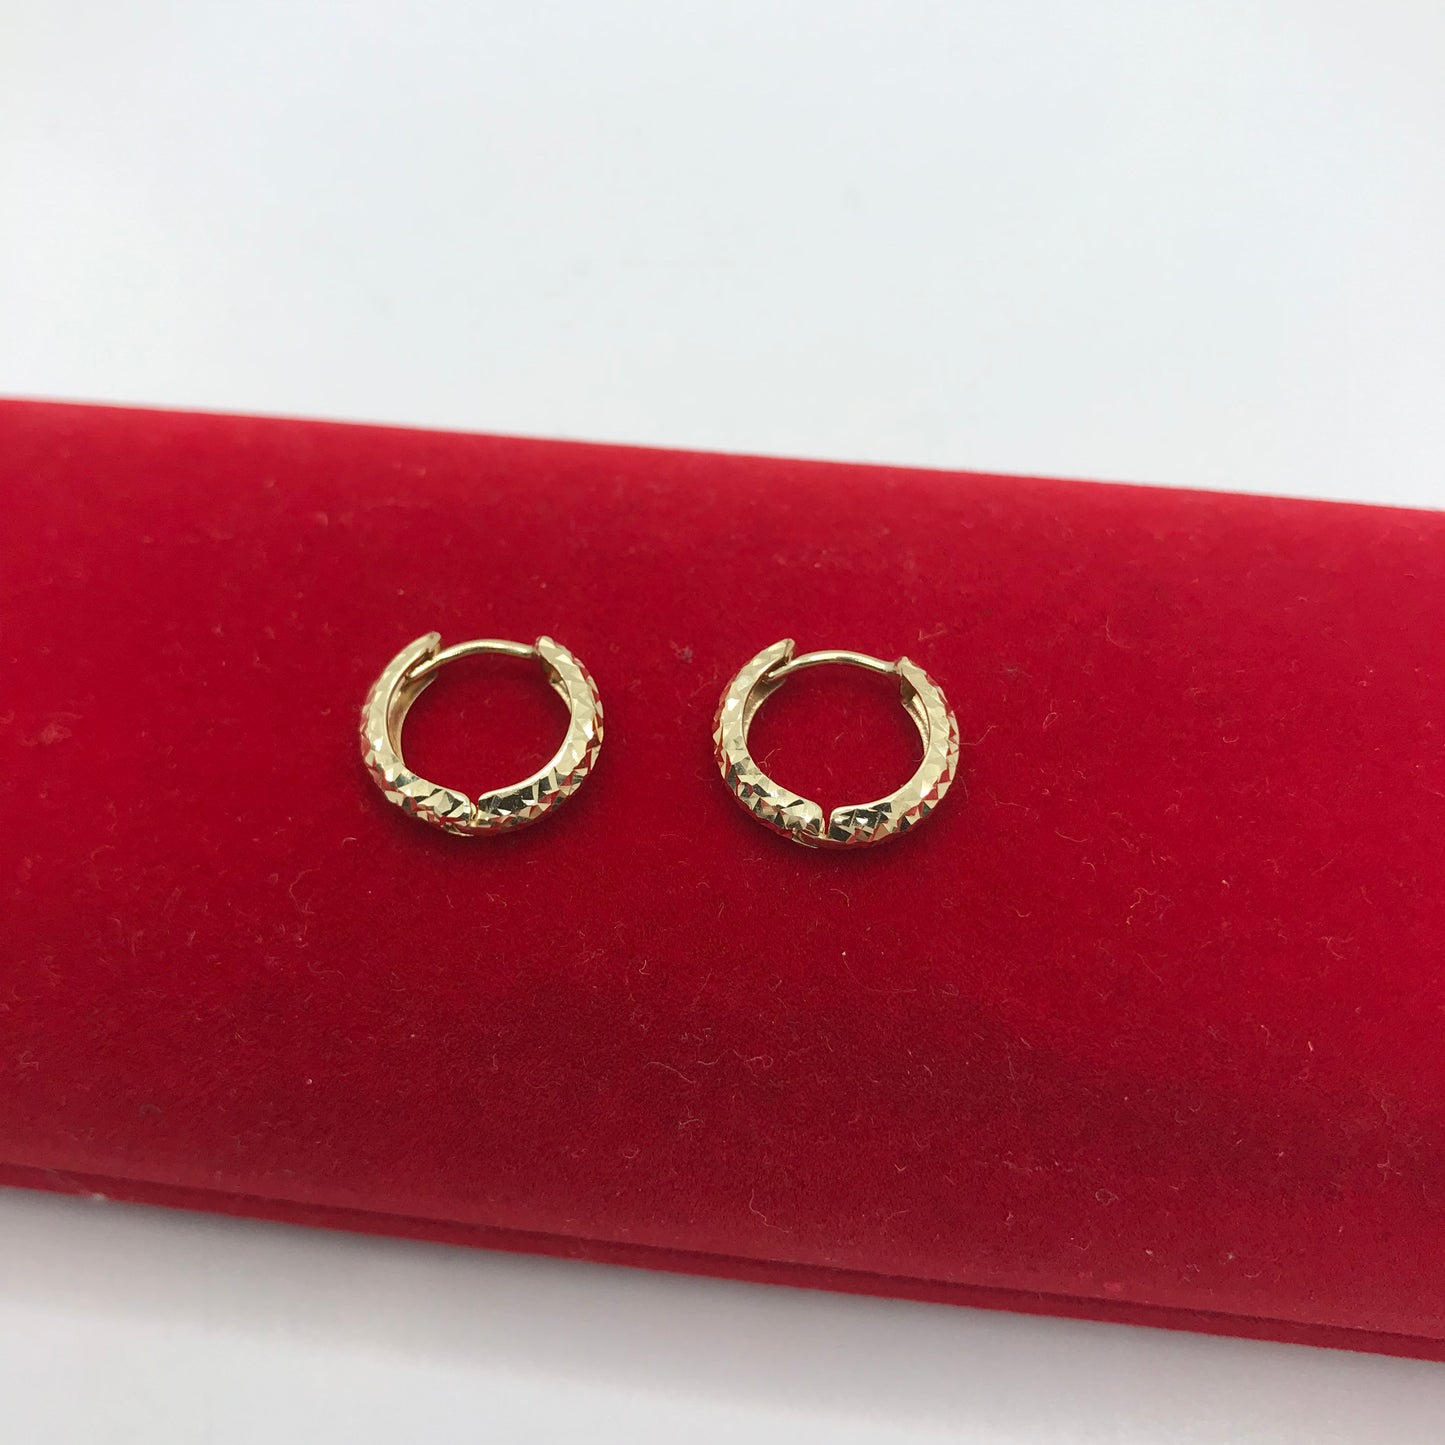 10k gold hoop earrings